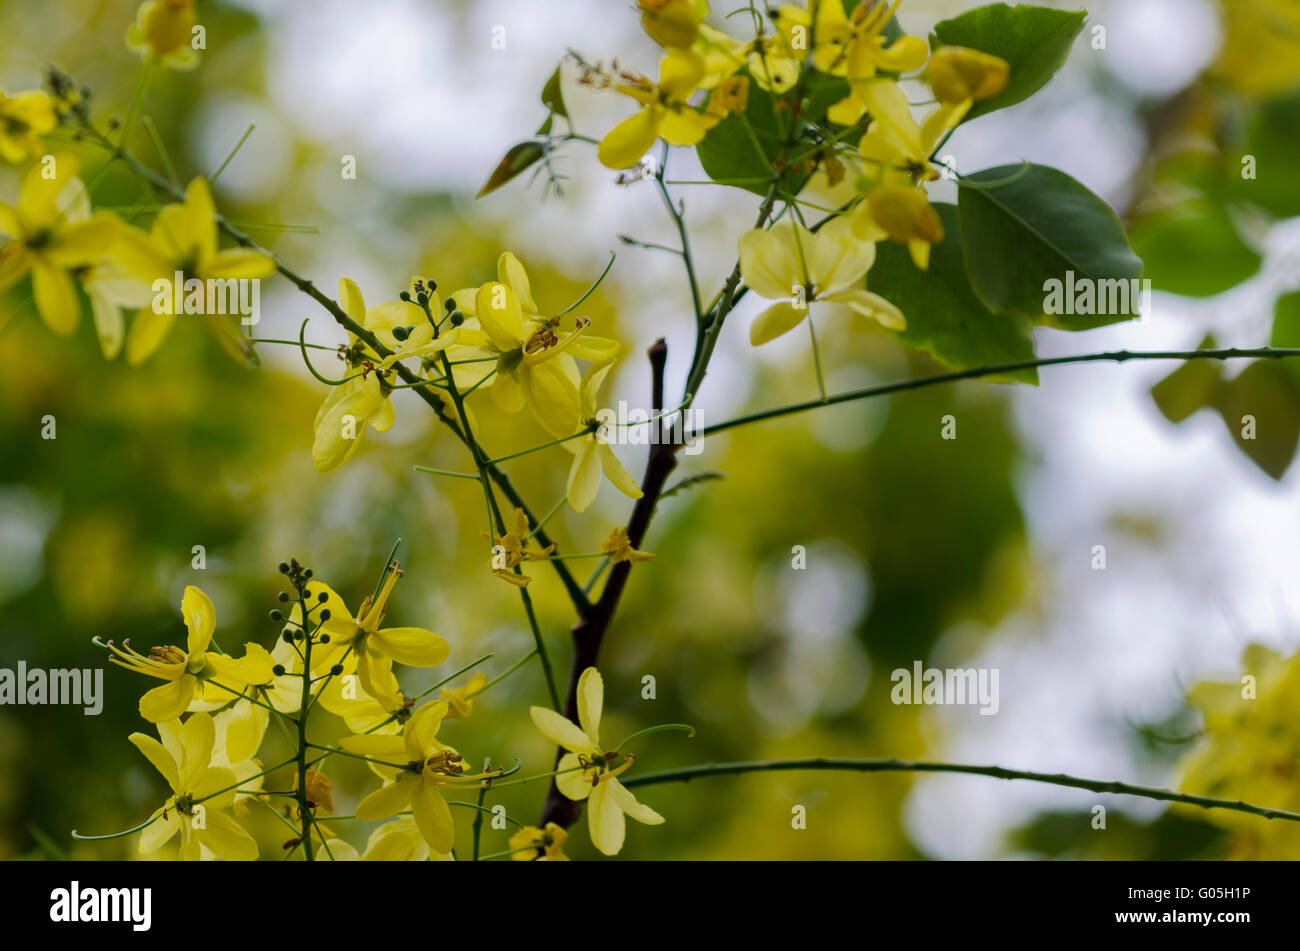 Cassia fistula or the Golden shower tree in Lodi Garden, New Delhi, Delhi, India Stock Photo